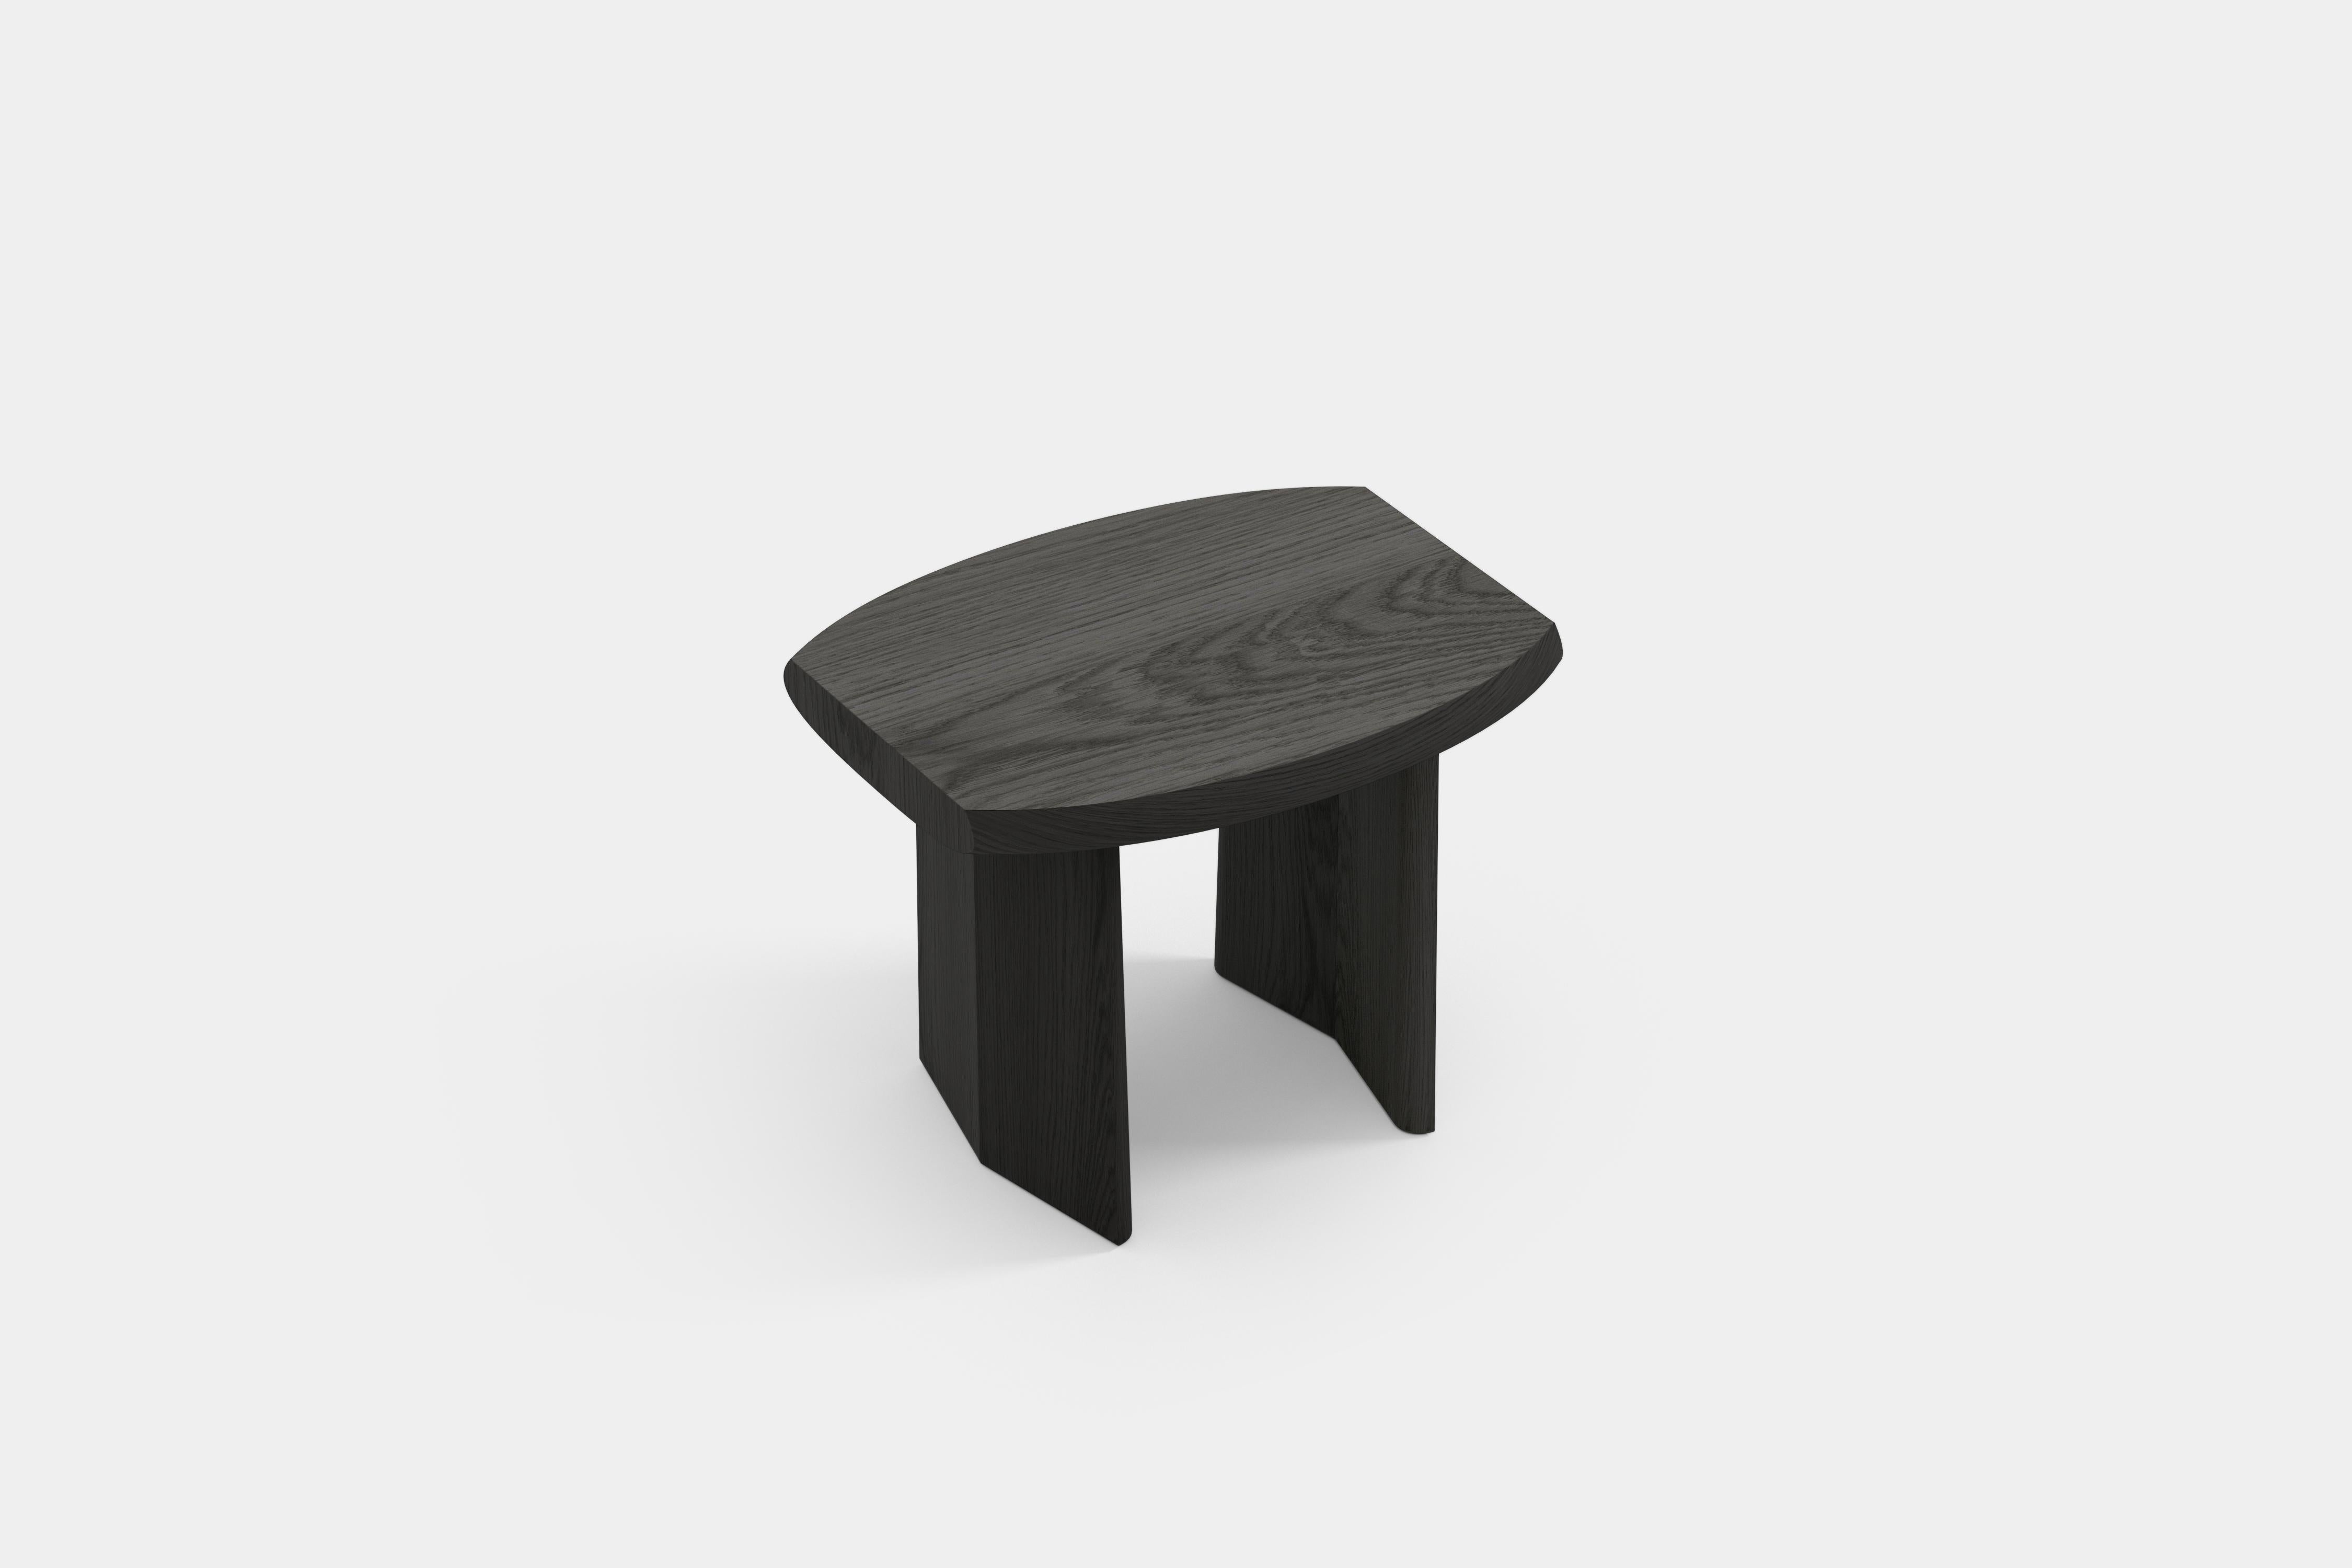 Peana Beistelltisch, Nachttisch, Tisch aus schwarz getöntem Holz von Joel Escalona

Peana, was im Englischen so viel wie Sockel bedeutet, ist eine Serie von Tischen und verschiedenen Oberflächen, die von der Idee inspiriert sind, würdige Möbelstücke